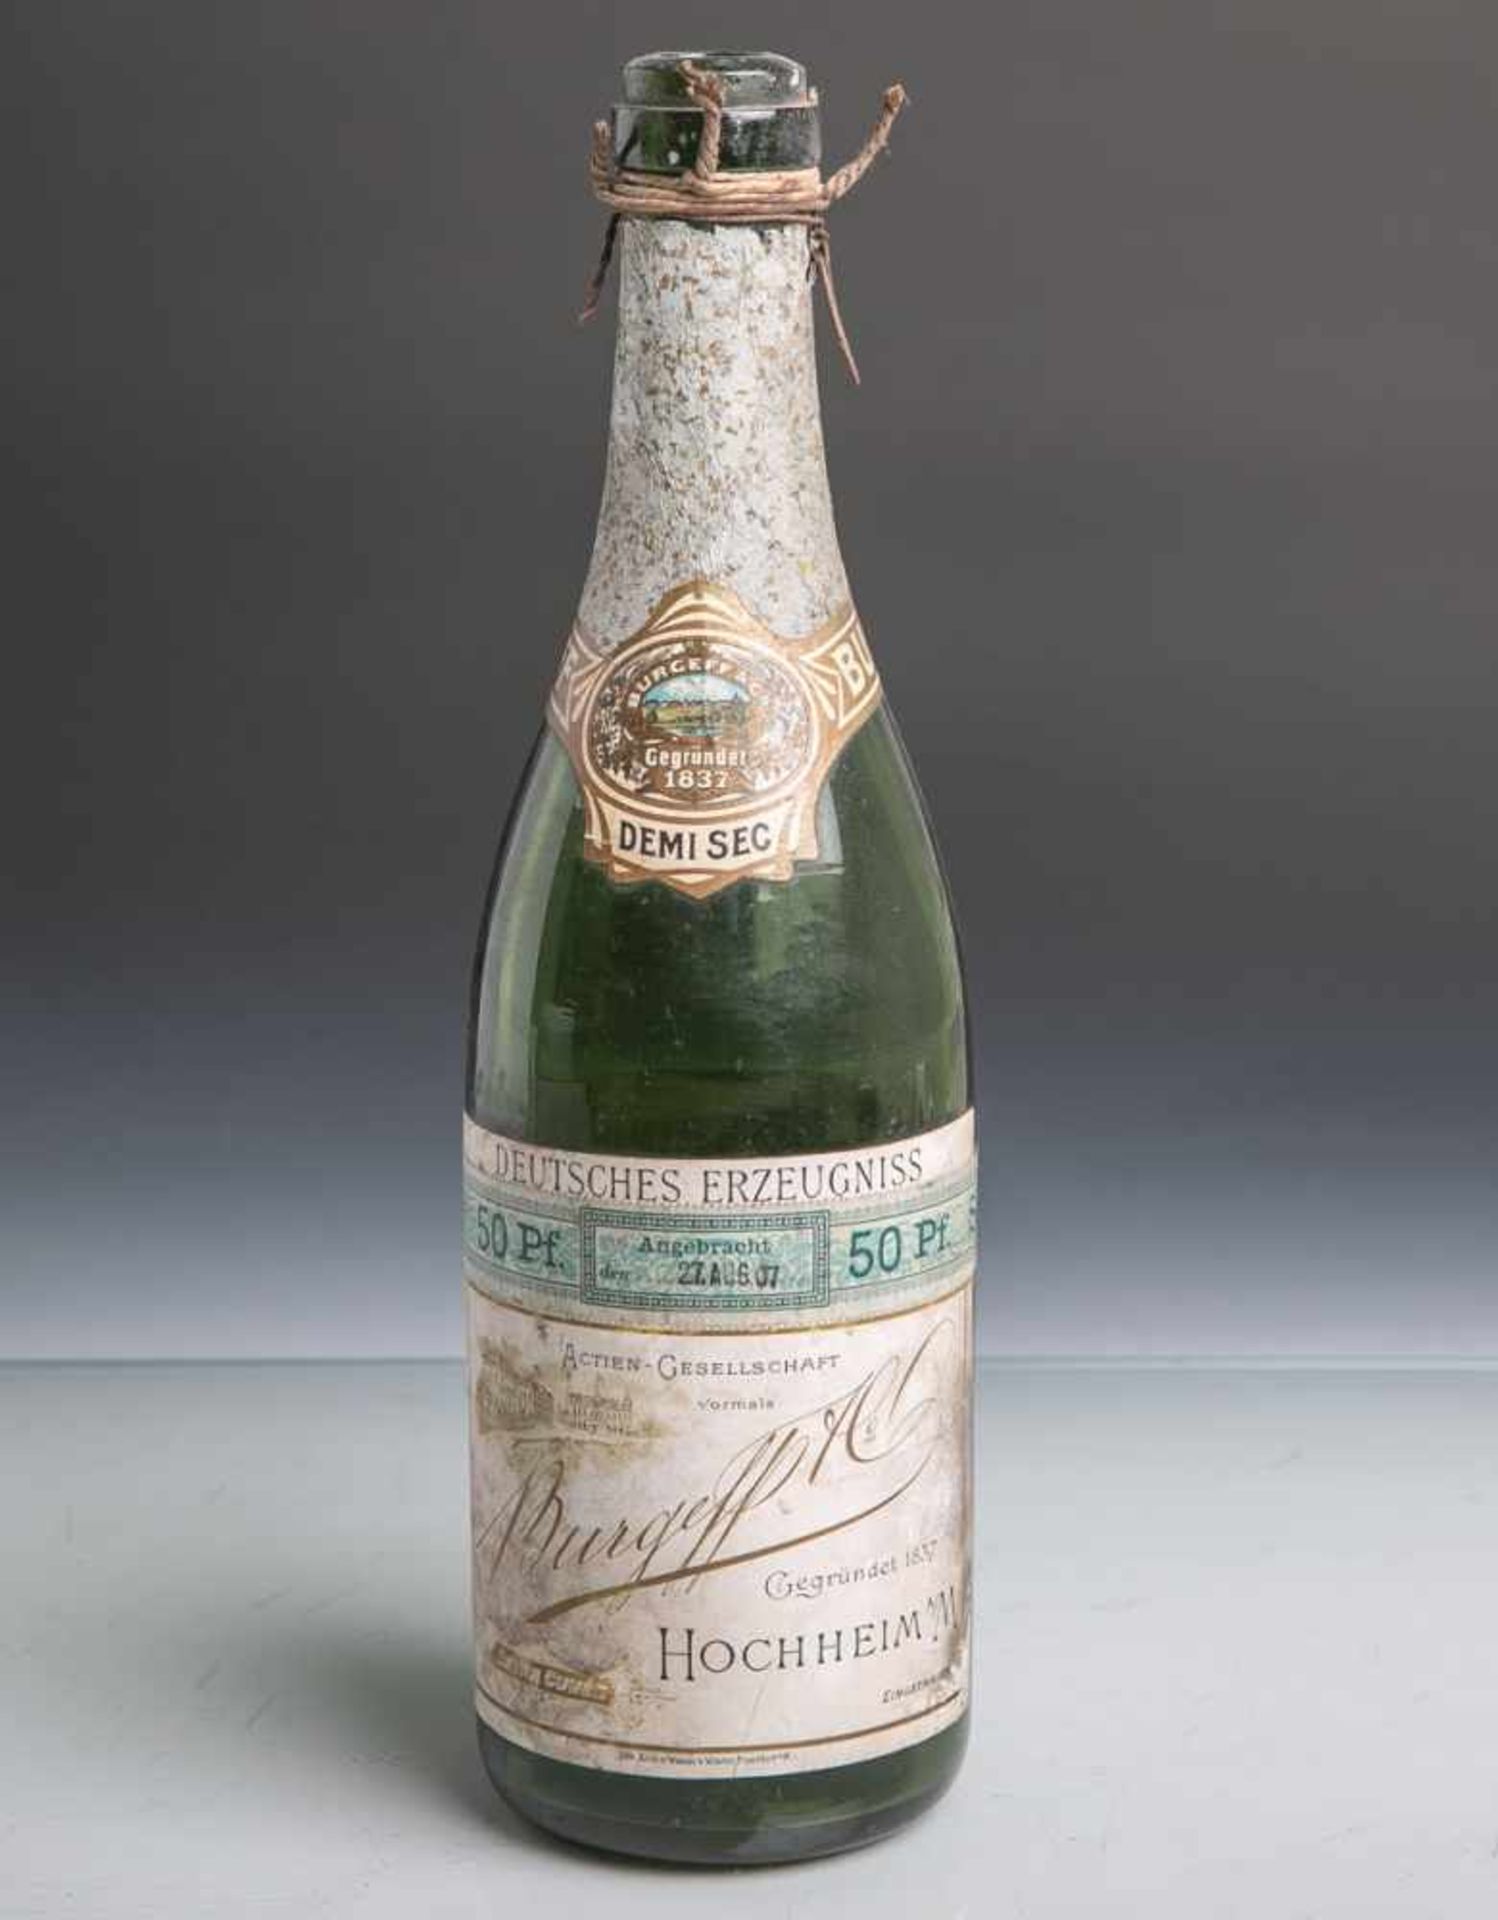 Historische Weinflasche (Anfang 20. Jahrhundert), grünes Glas, orig. Etikett "Burgeff u.<